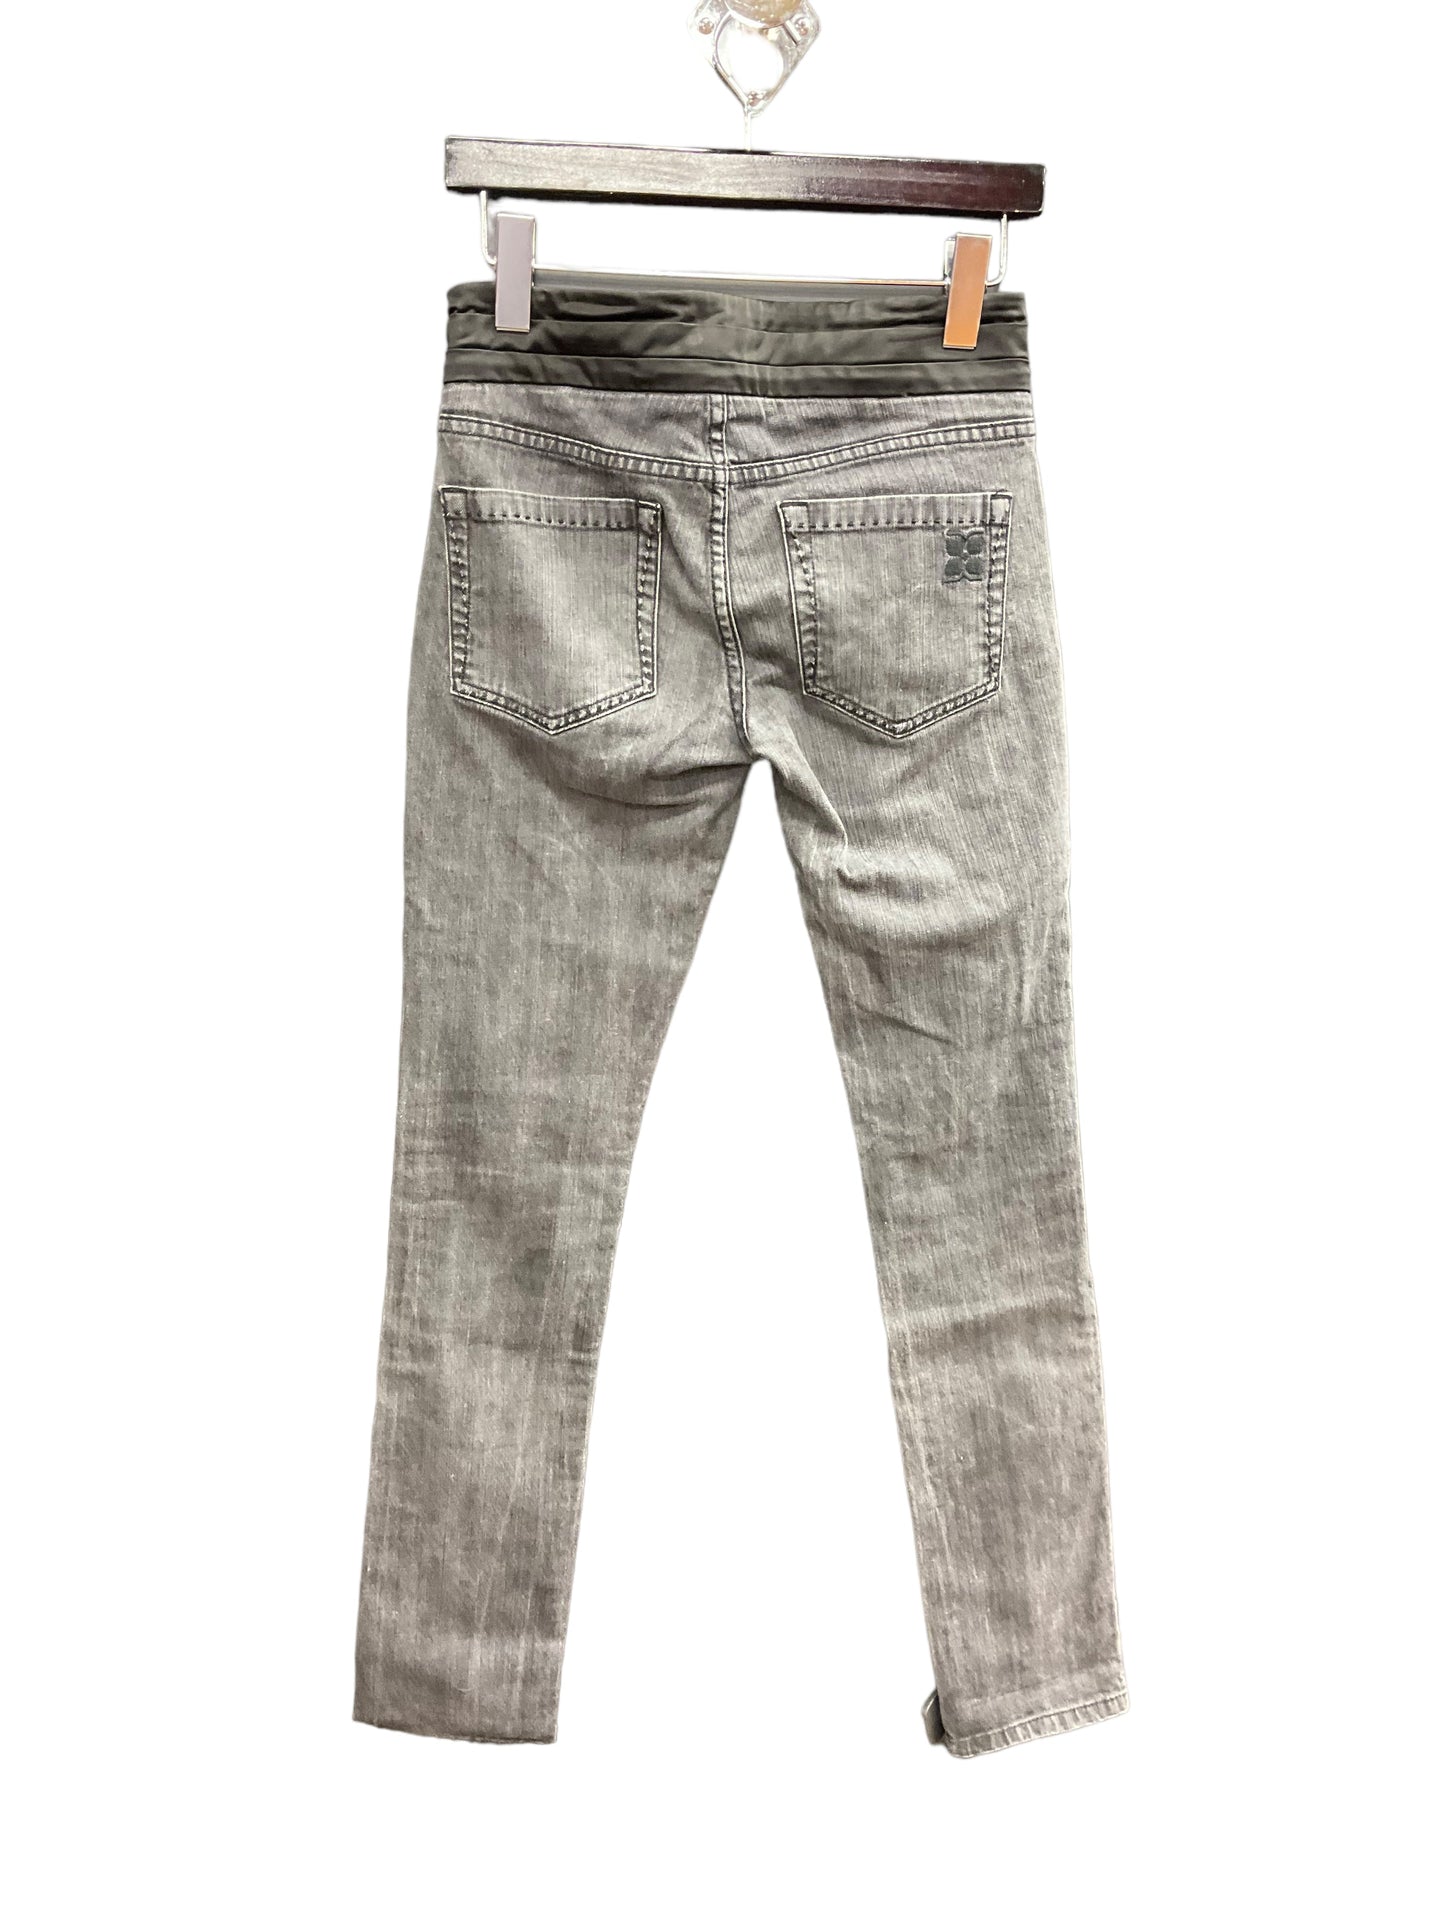 Jeans Skinny By Bcbg  Size: 2